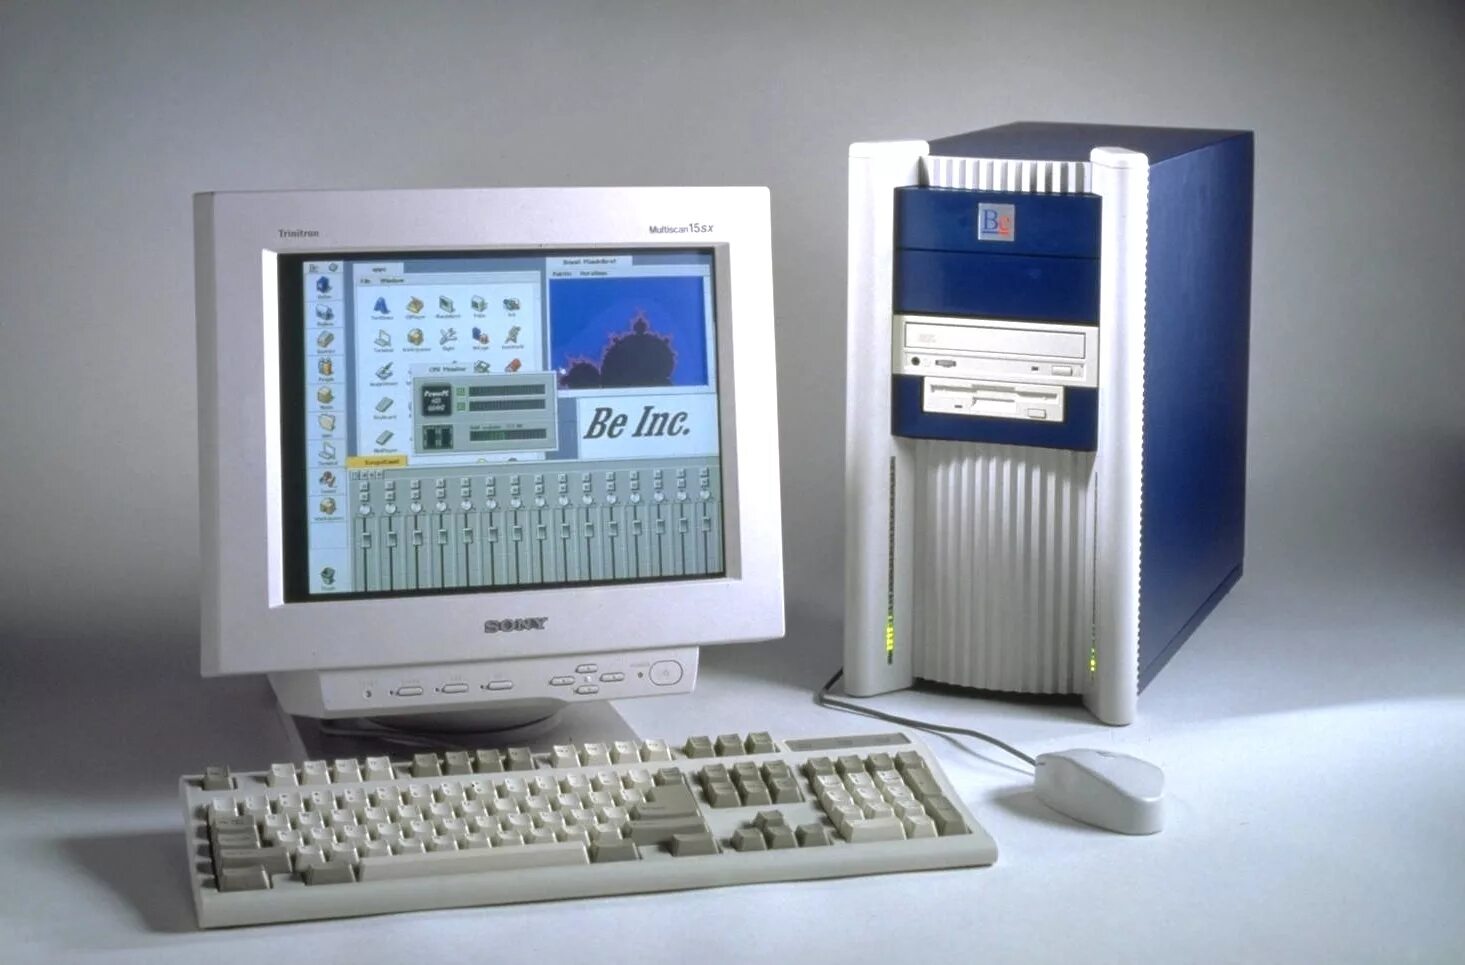 5 е поколение. Четвёртое поколение компьютеров (с использованием микропроцессоров). Микро ЭВМ 4 поколения. 4е поколение компьютеров. Четвертое поколение ЭВМ.